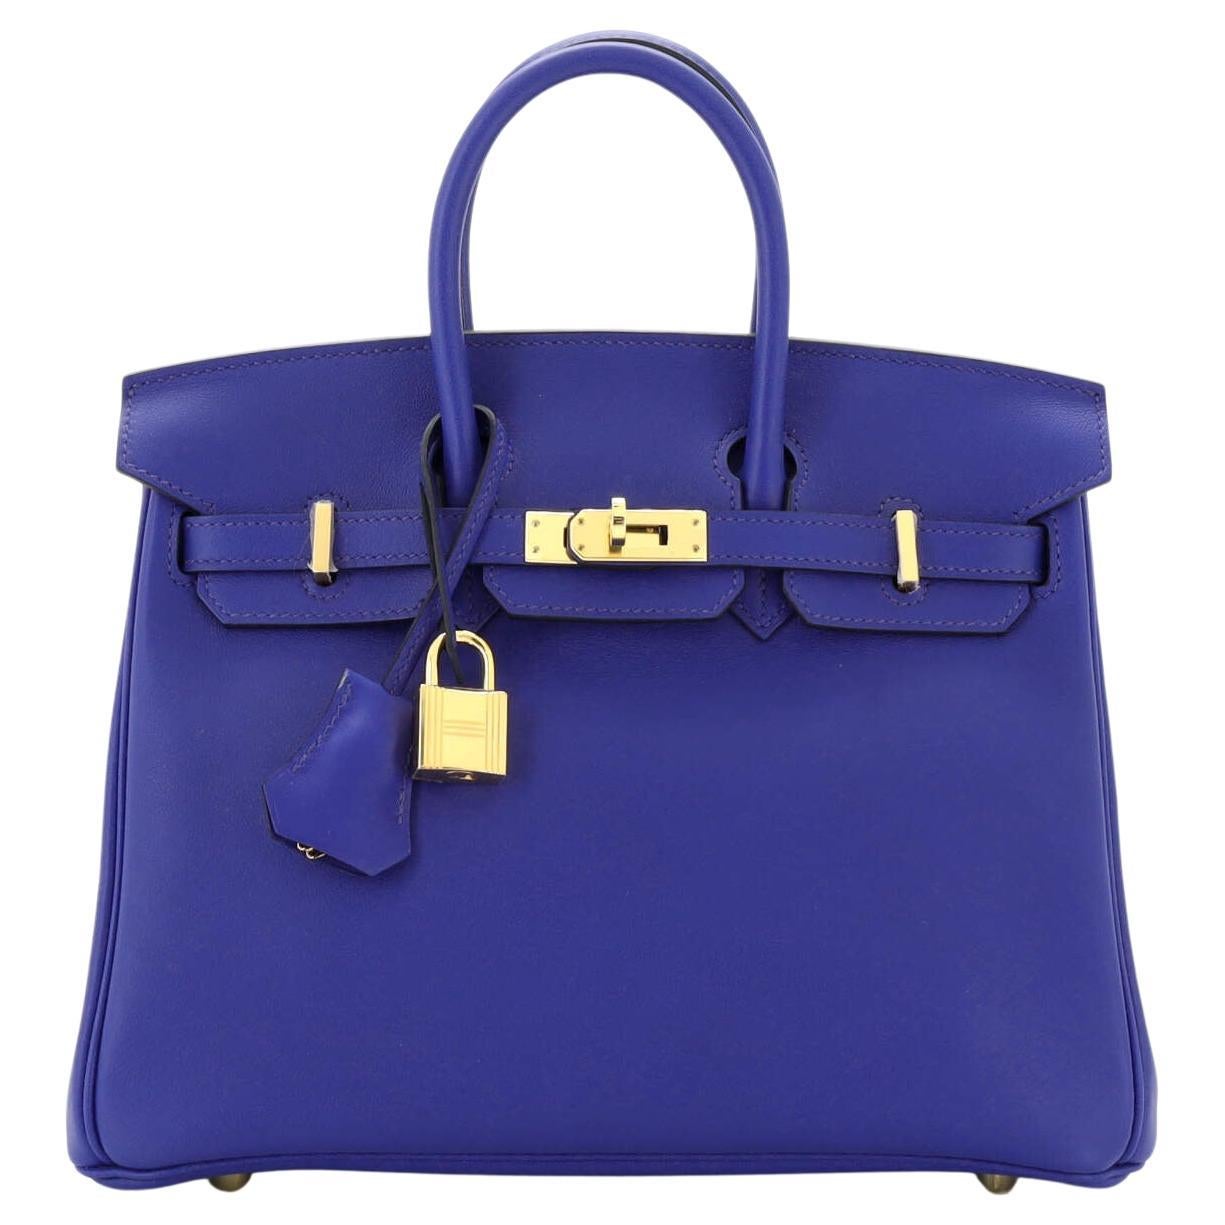 Hermes Birkin Handbag Bleu Electrique Swift with Gold Hardware 25